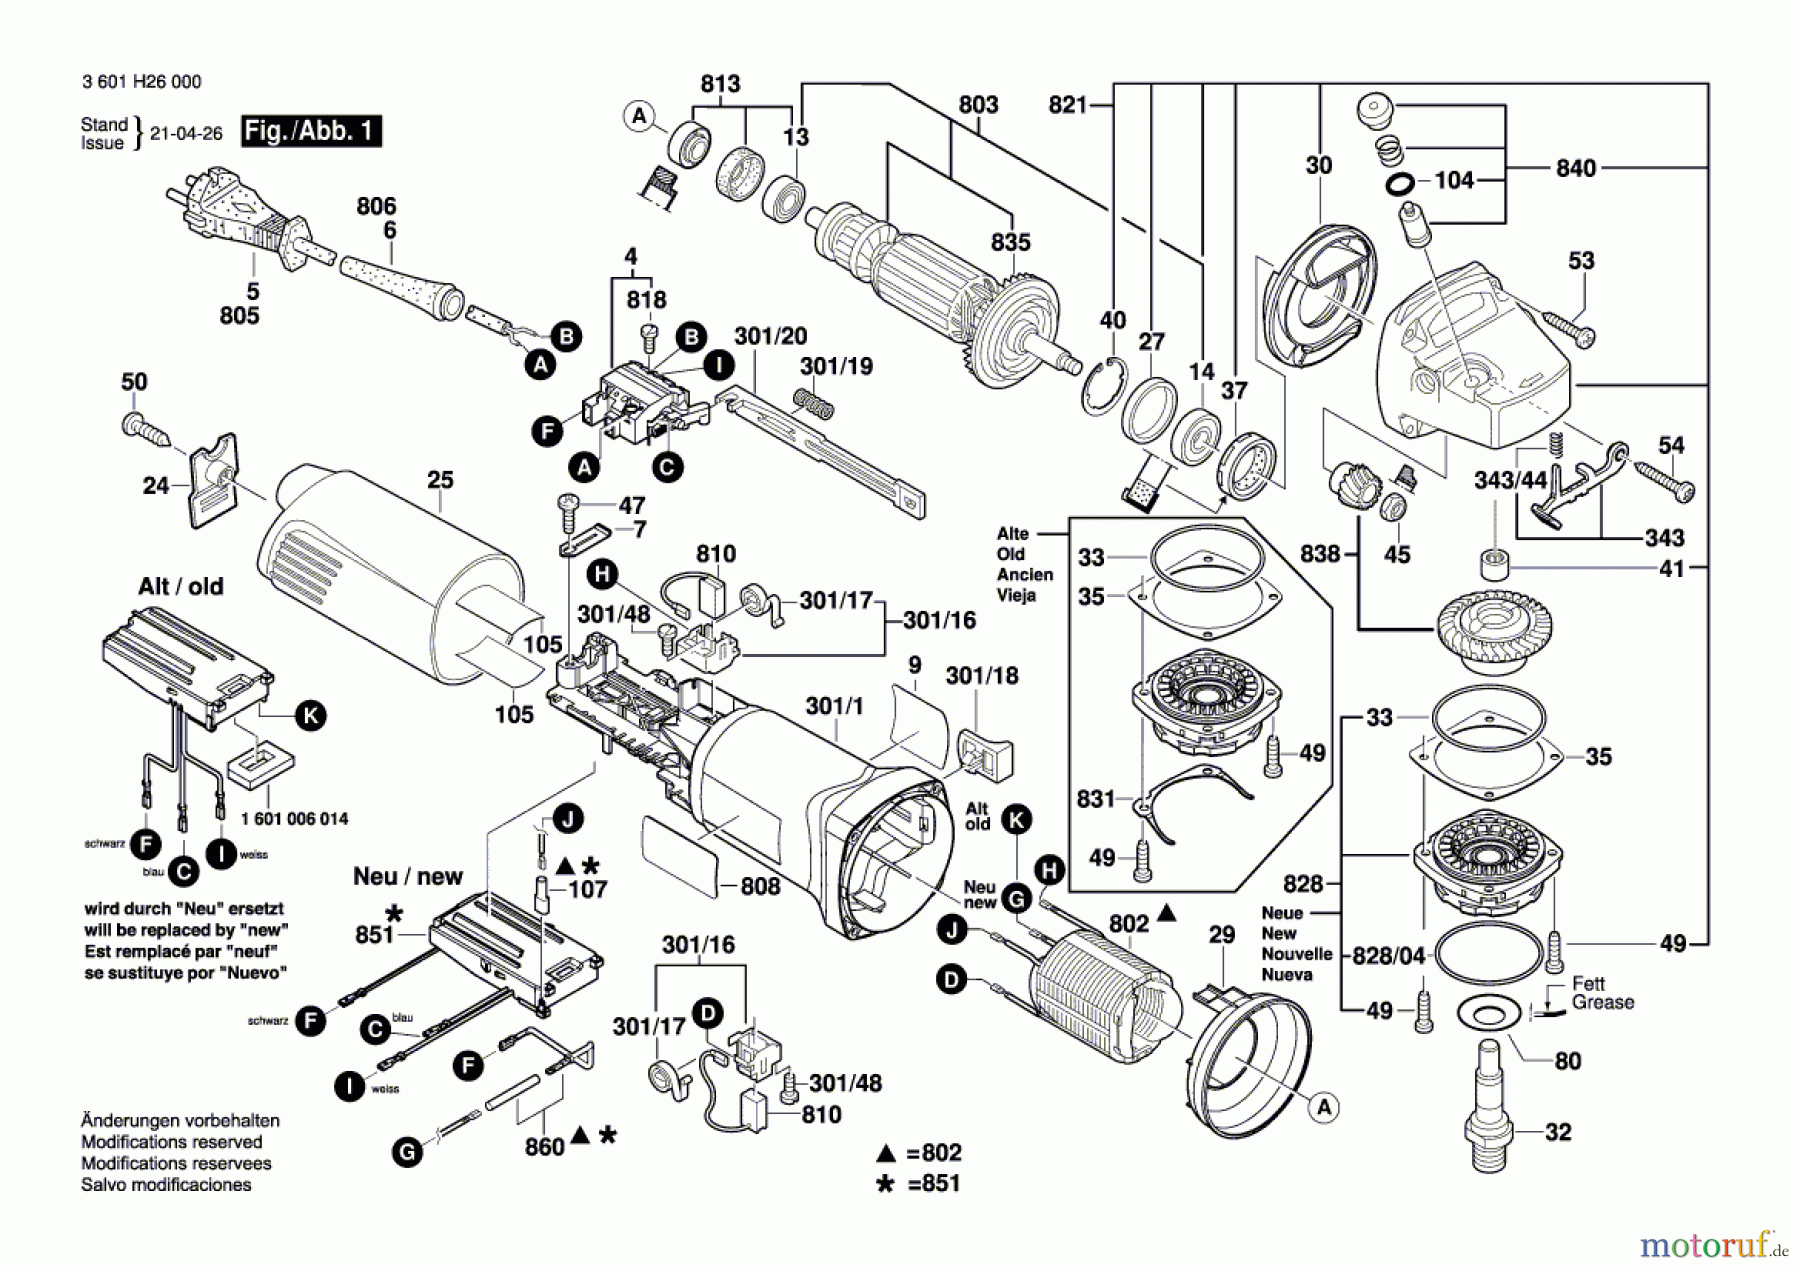  Bosch Werkzeug Winkelschleifer GWS 14-150 CI Seite 1